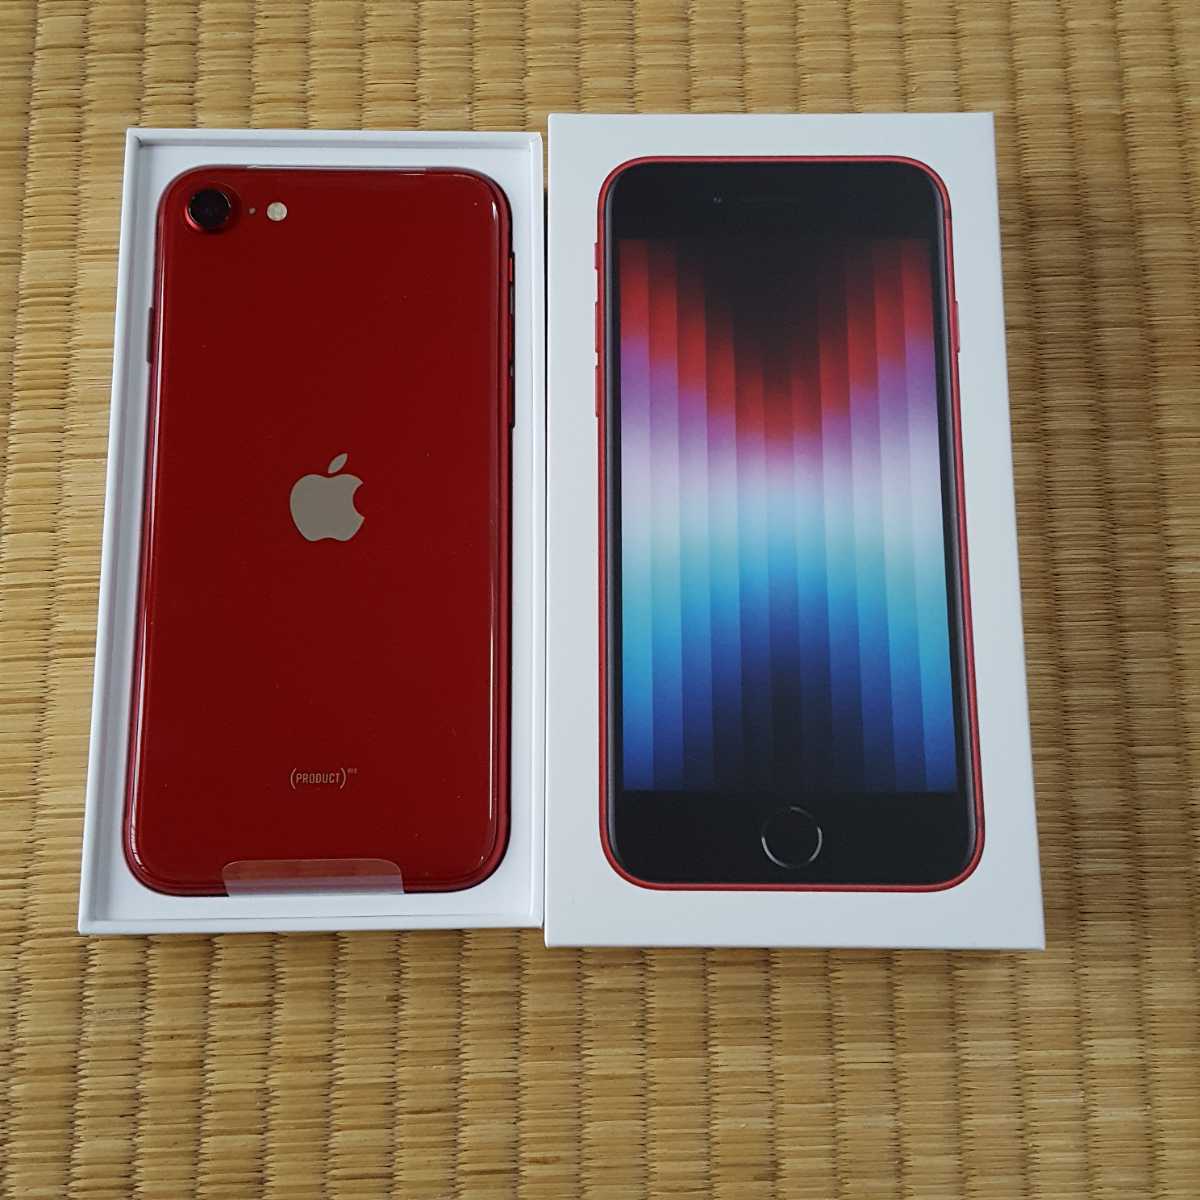 【はありませ】 iPhone - iPhone SE 第3世代 Red 赤色 64GB の します